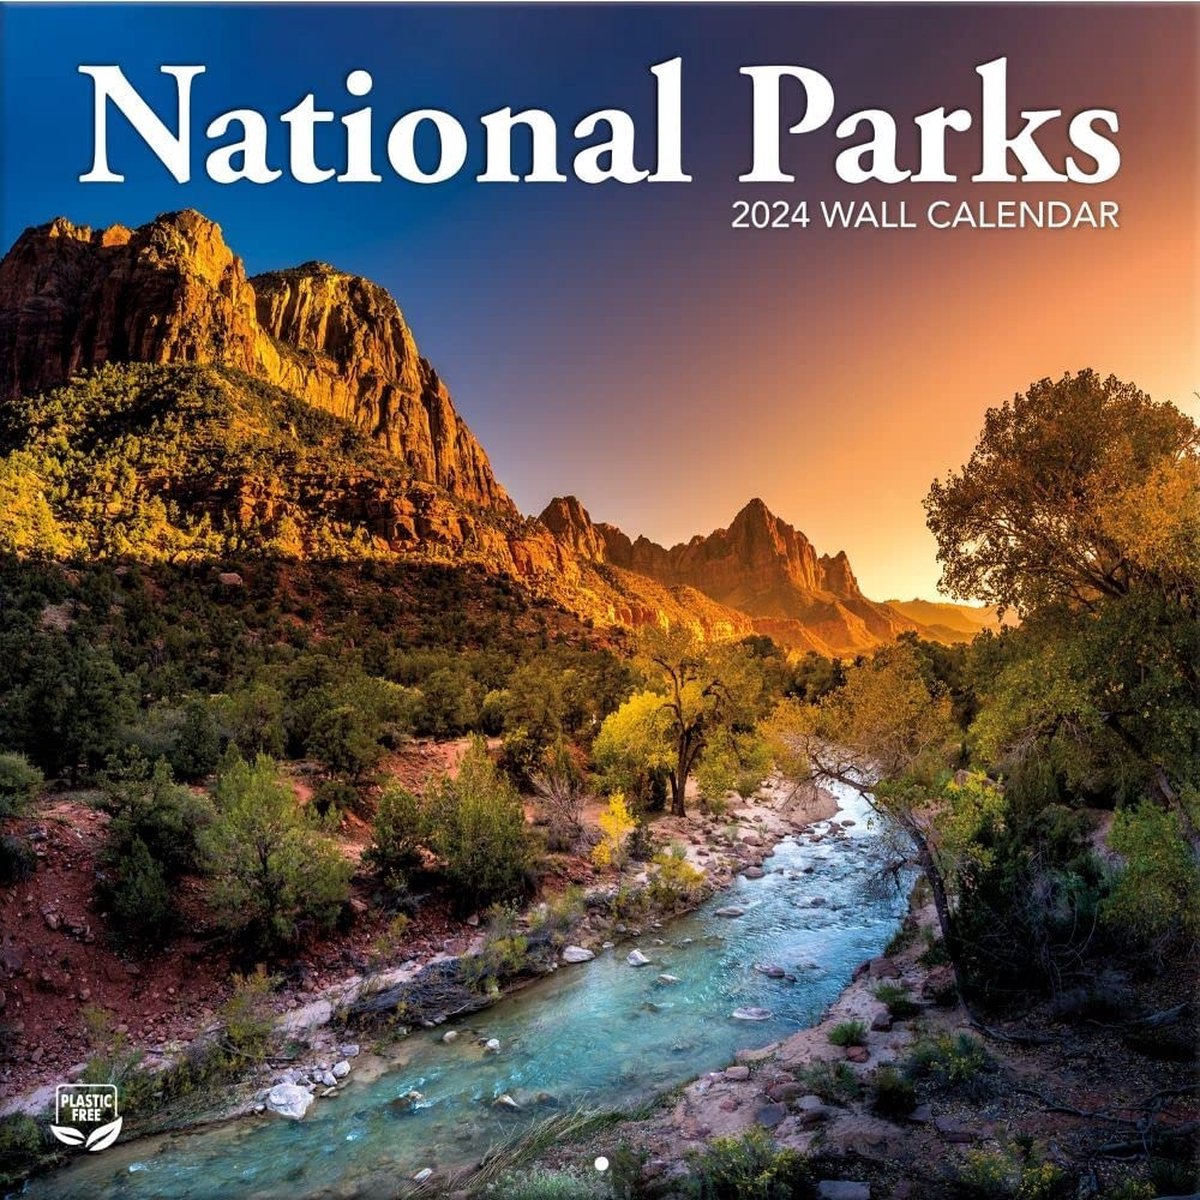 National Parks Kalender 2024 TL Turner